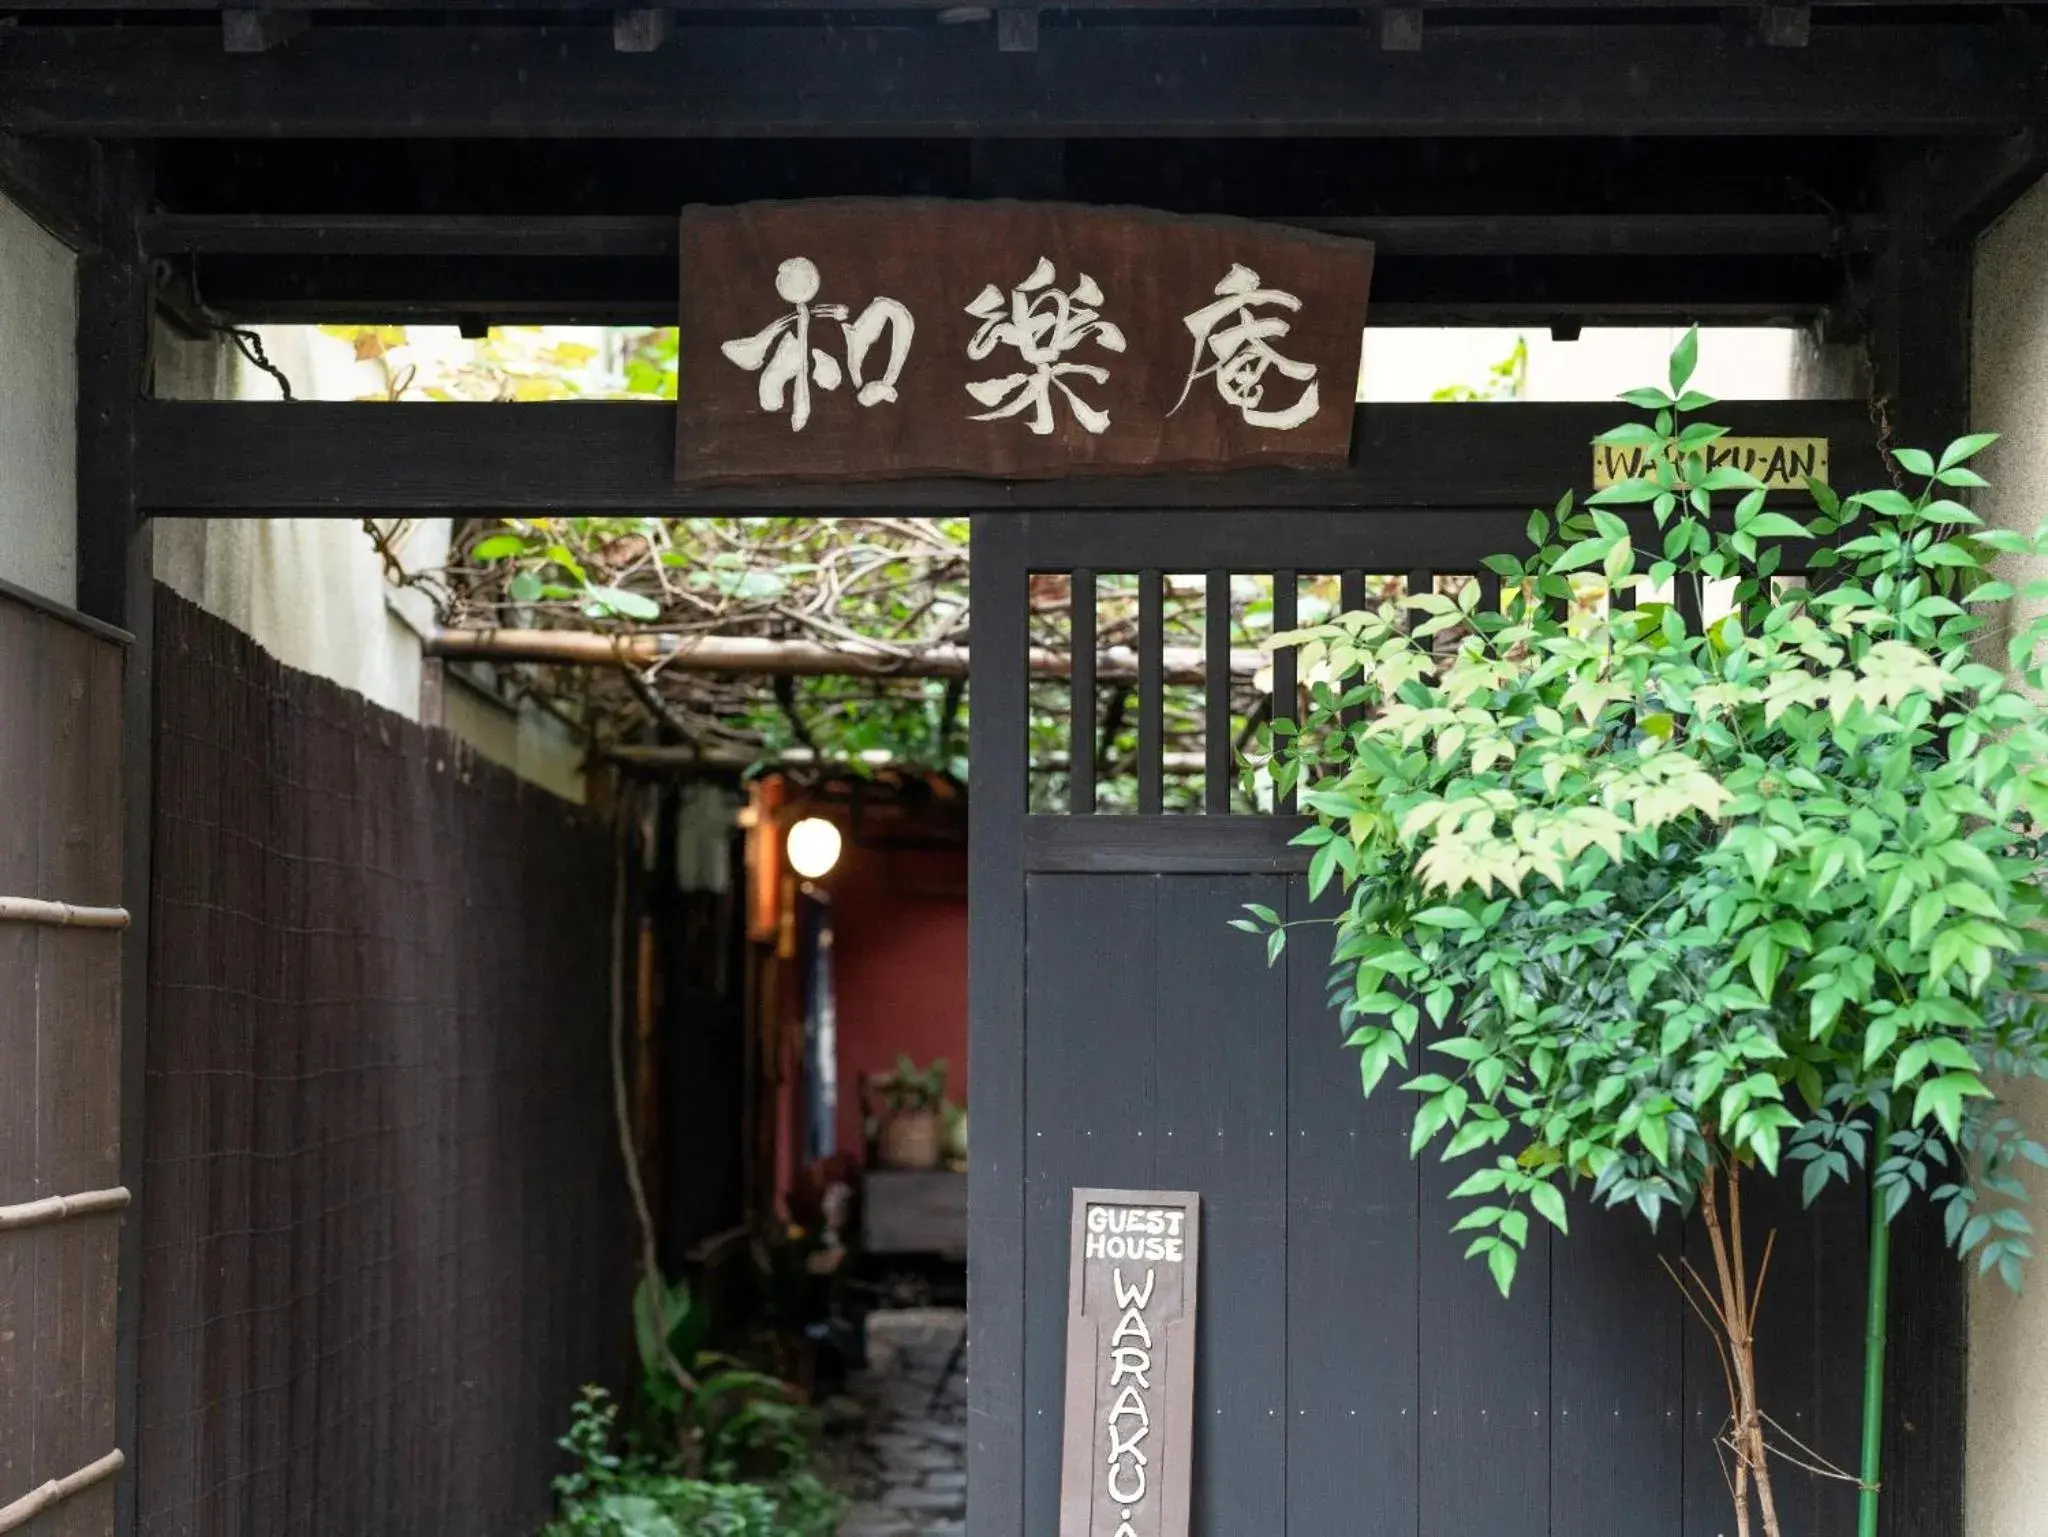 Facade/entrance in Guest House Waraku-an